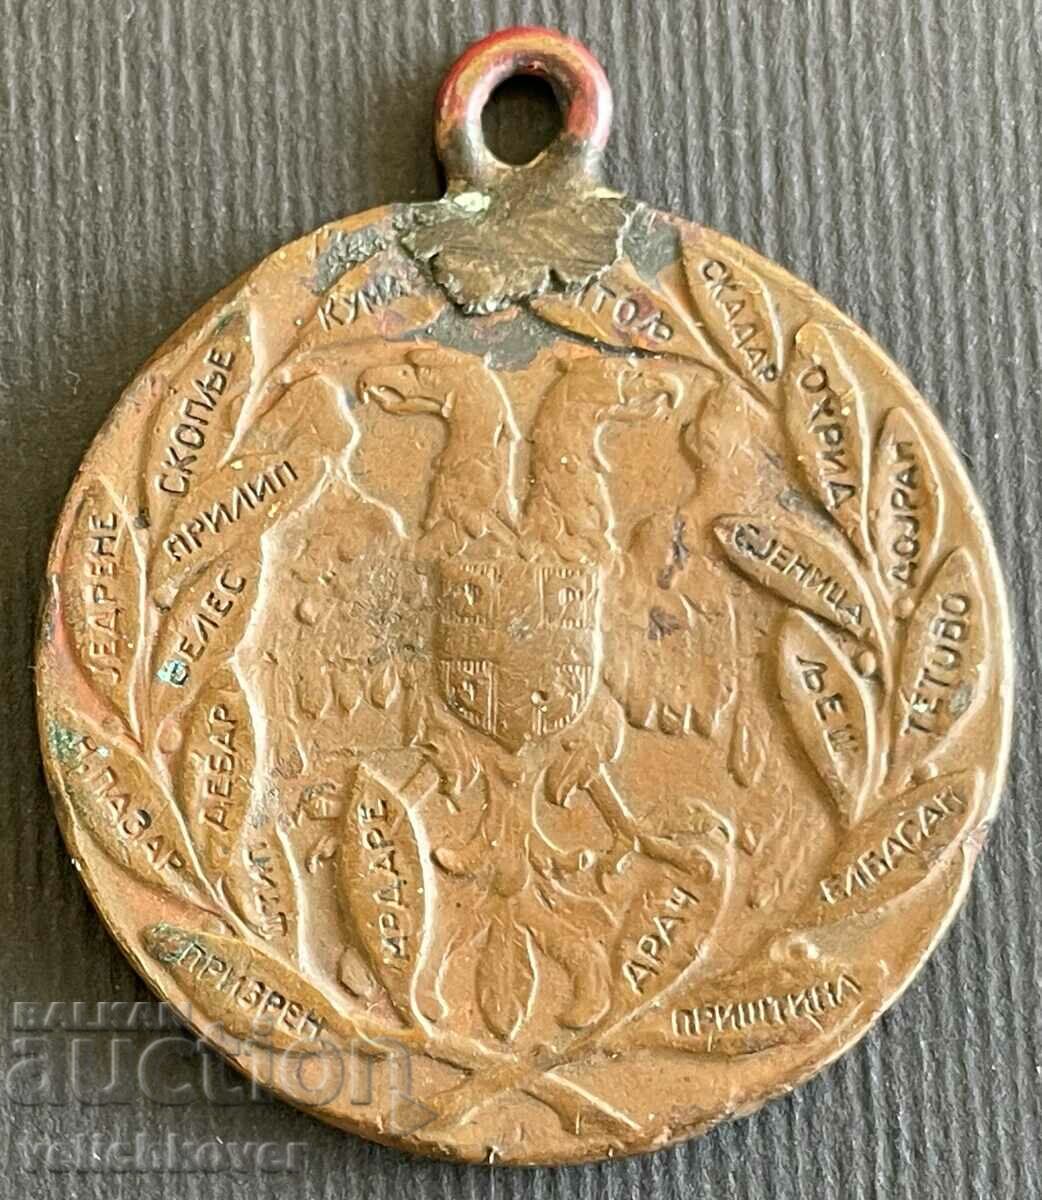 34771 Medalia Regatul Serbiei pentru eliberarea Kosovo 1912